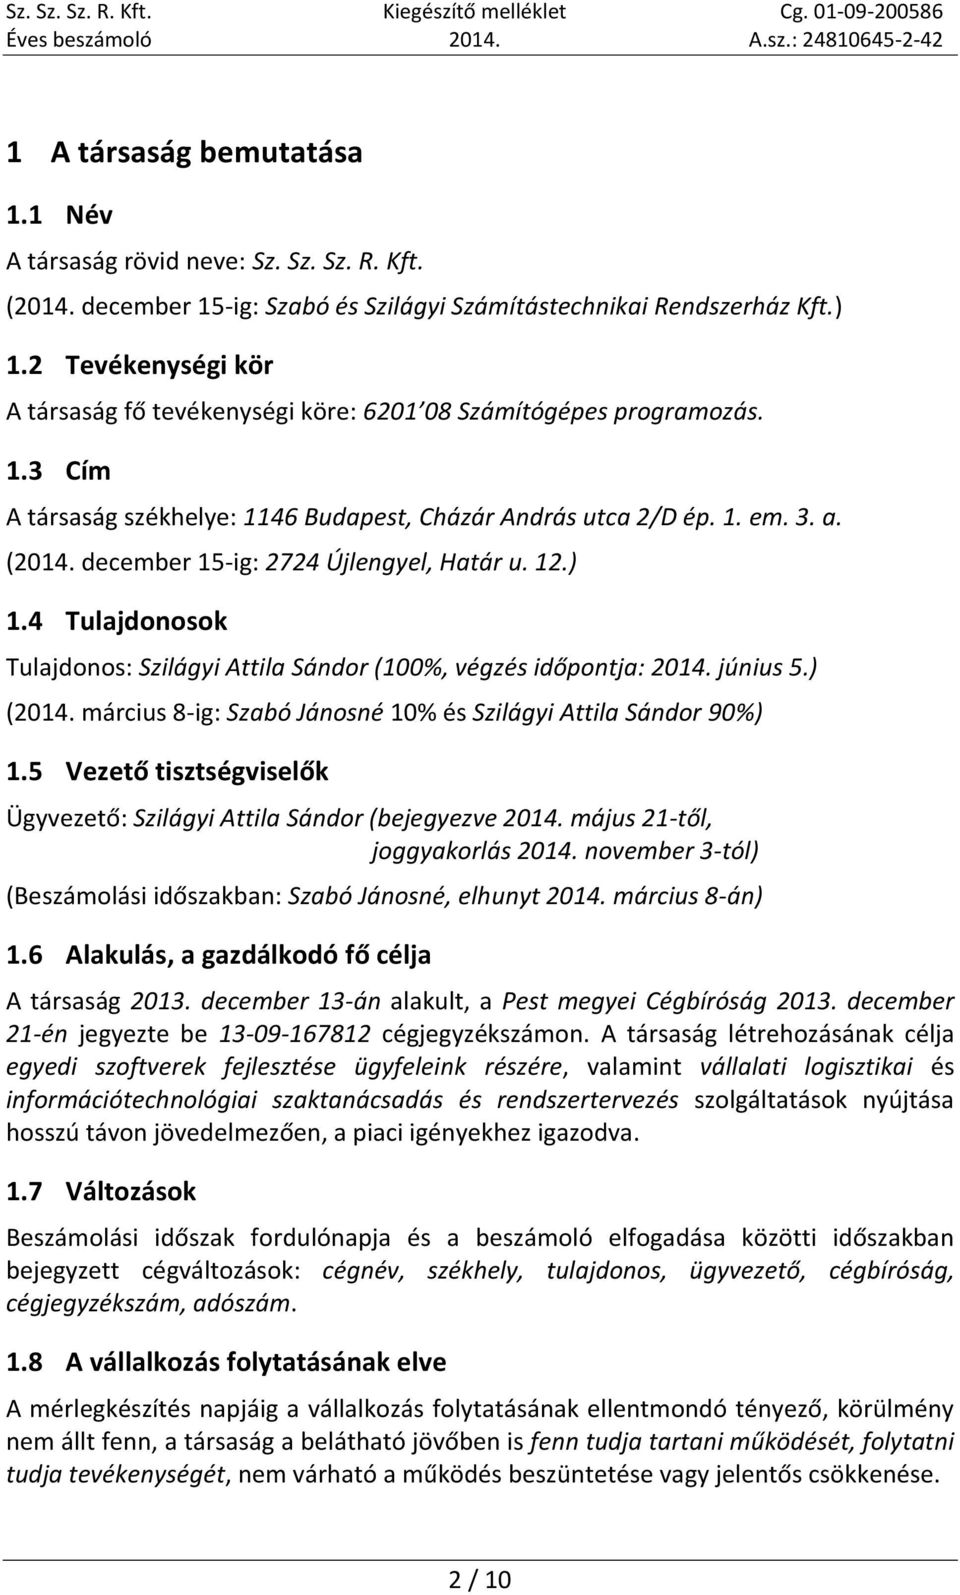 december 15-ig: 2724 Újlengyel, Határ u. 12.) 1.4 Tulajdonosok Tulajdonos: Szilágyi Attila Sándor (100%, végzés időpontja: 2014. június 5.) (2014.